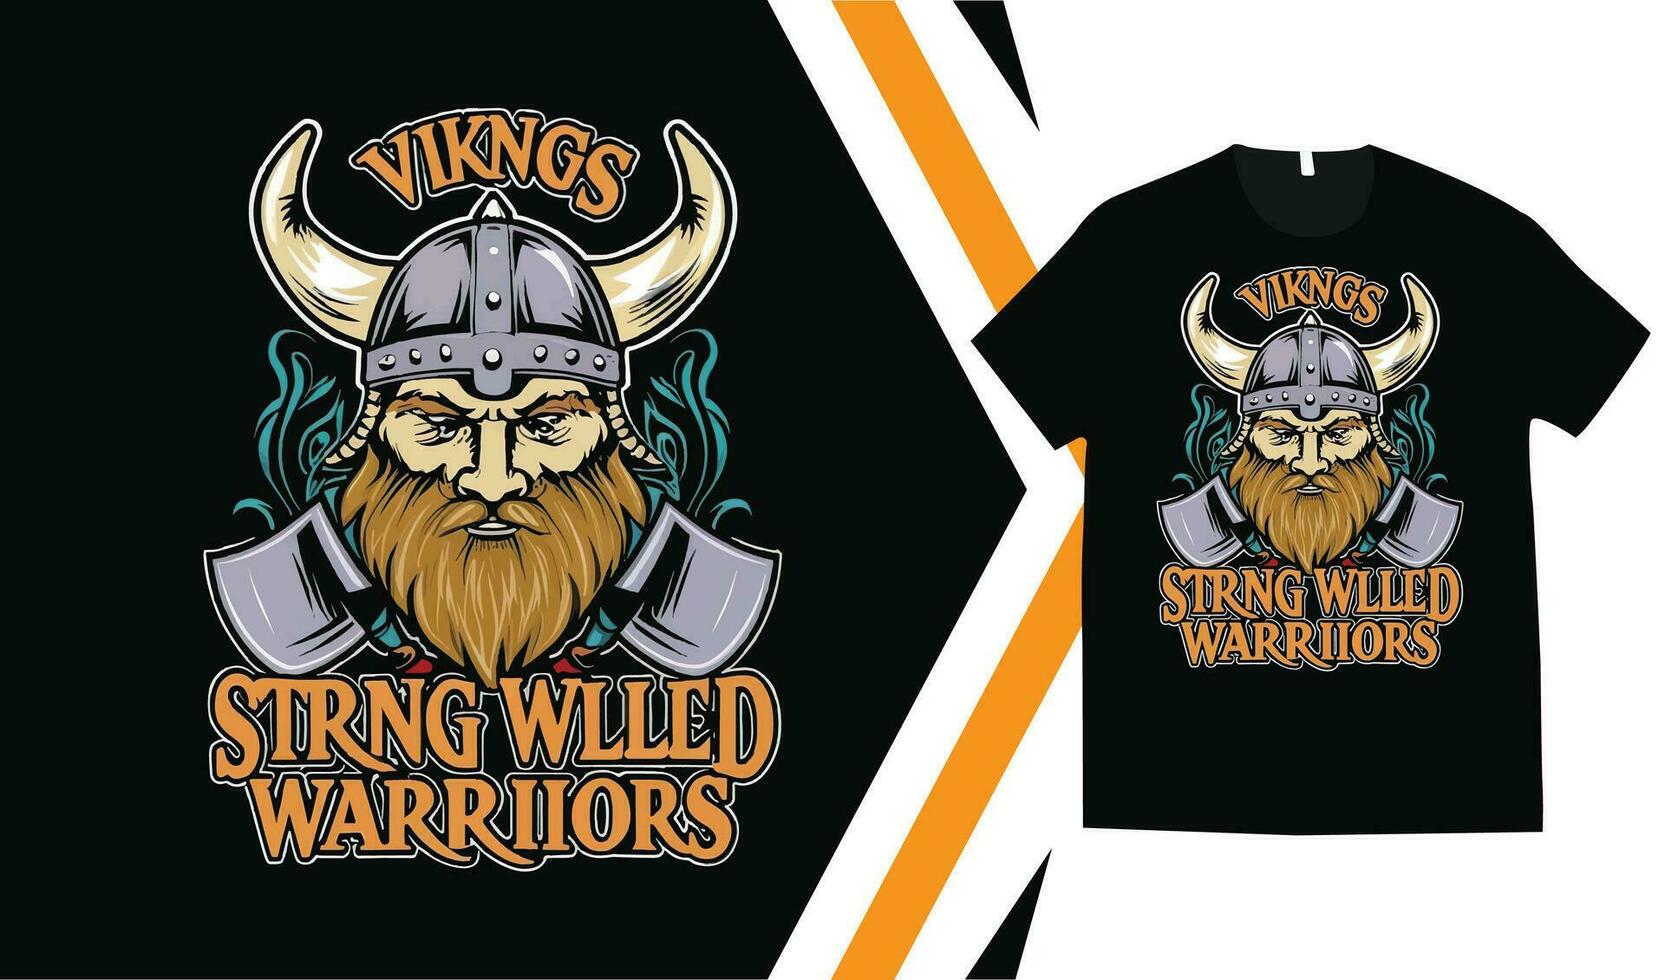 vikingo camiseta diseño, personalizado vikingos camiseta gráficos, vikingo guerreros camiseta, vestir personalizado diseño impresión Bosquejo. vector